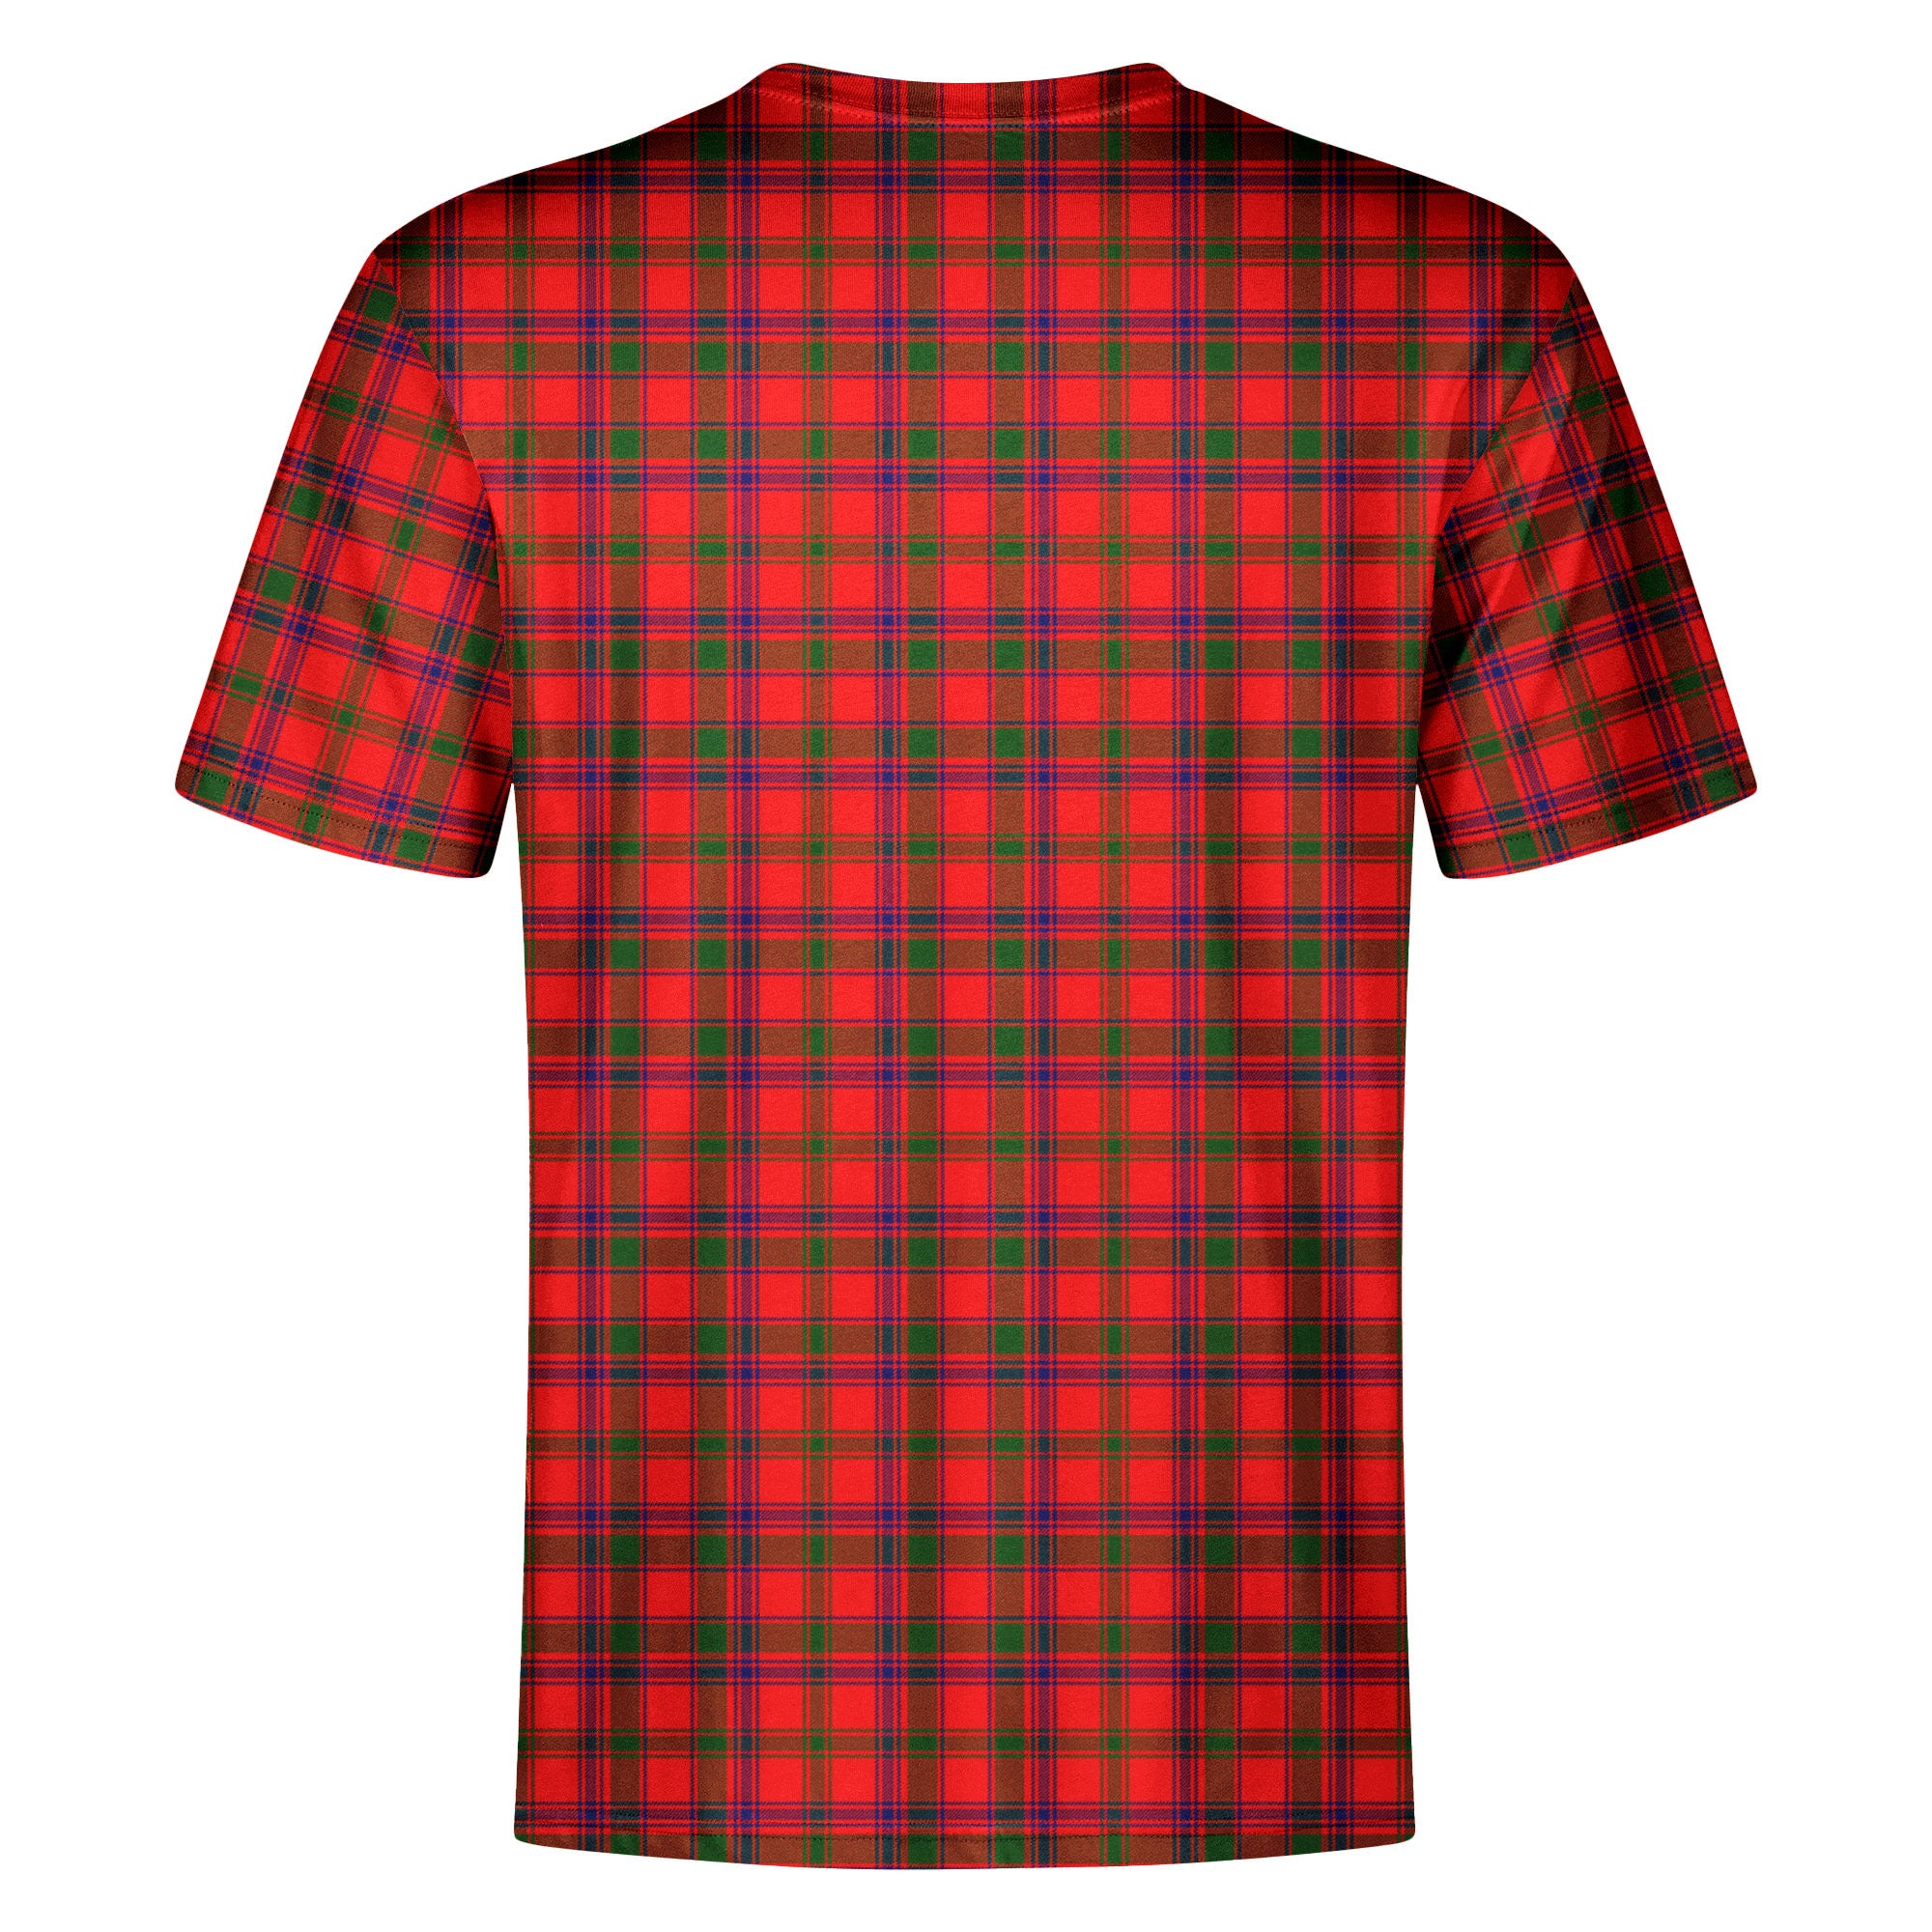 Bain Tartan Crest T-shirt